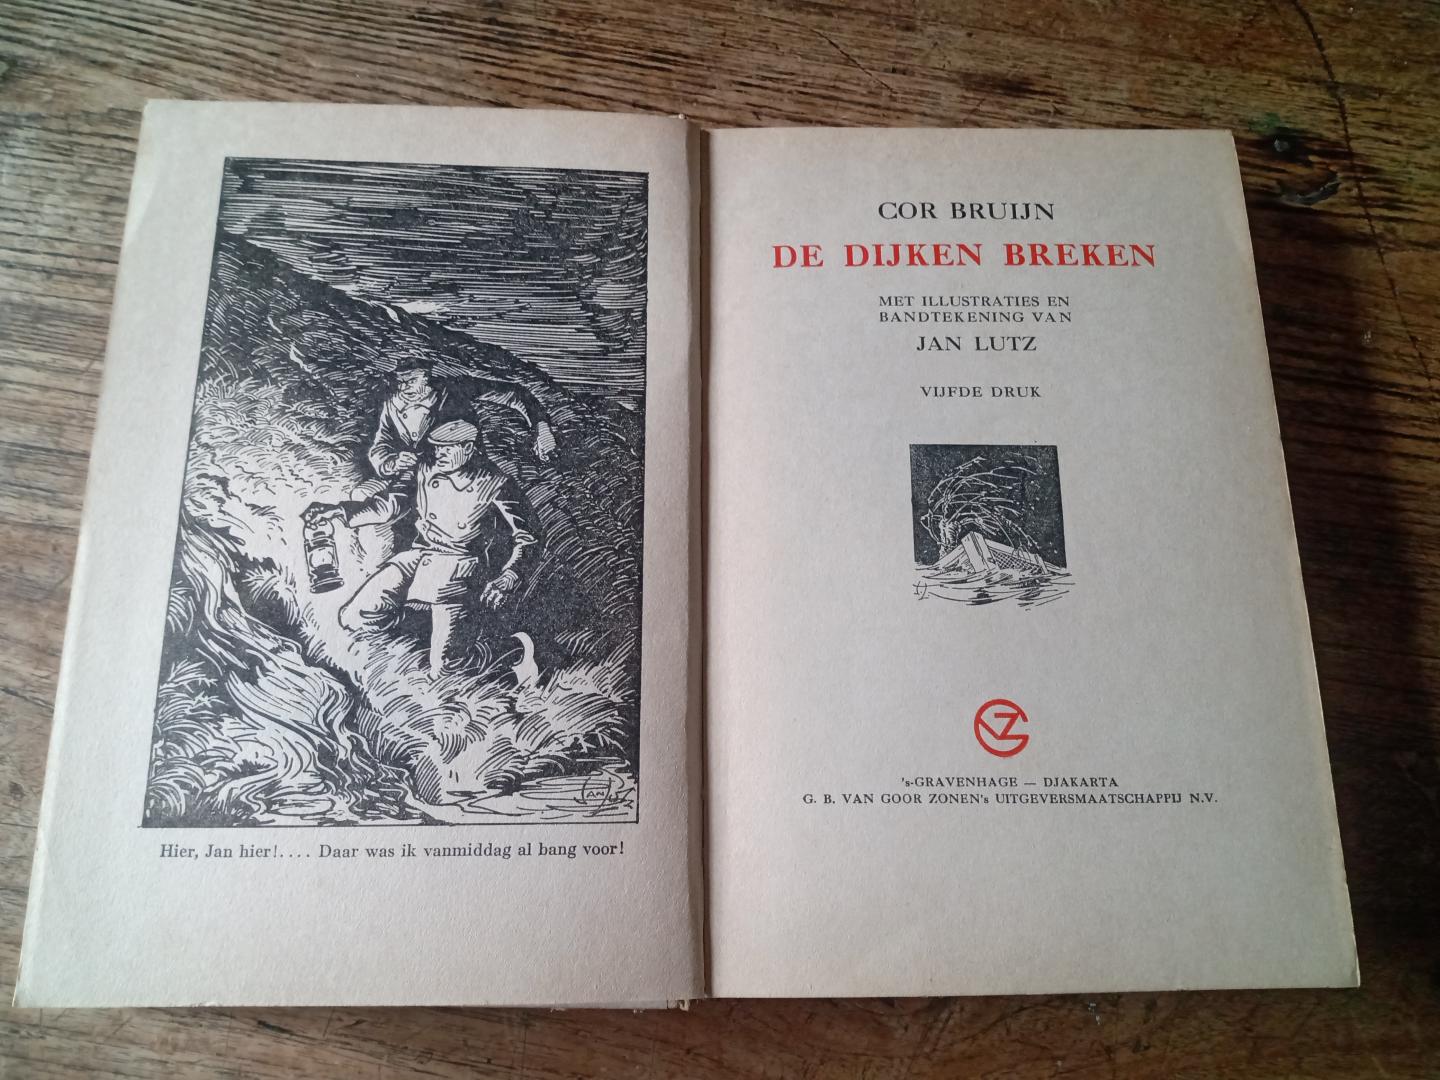 Bruijn, Cor - De dijken breken. (verhaal, speelt zich af in Waterland tijdens de watersnood van 1916)